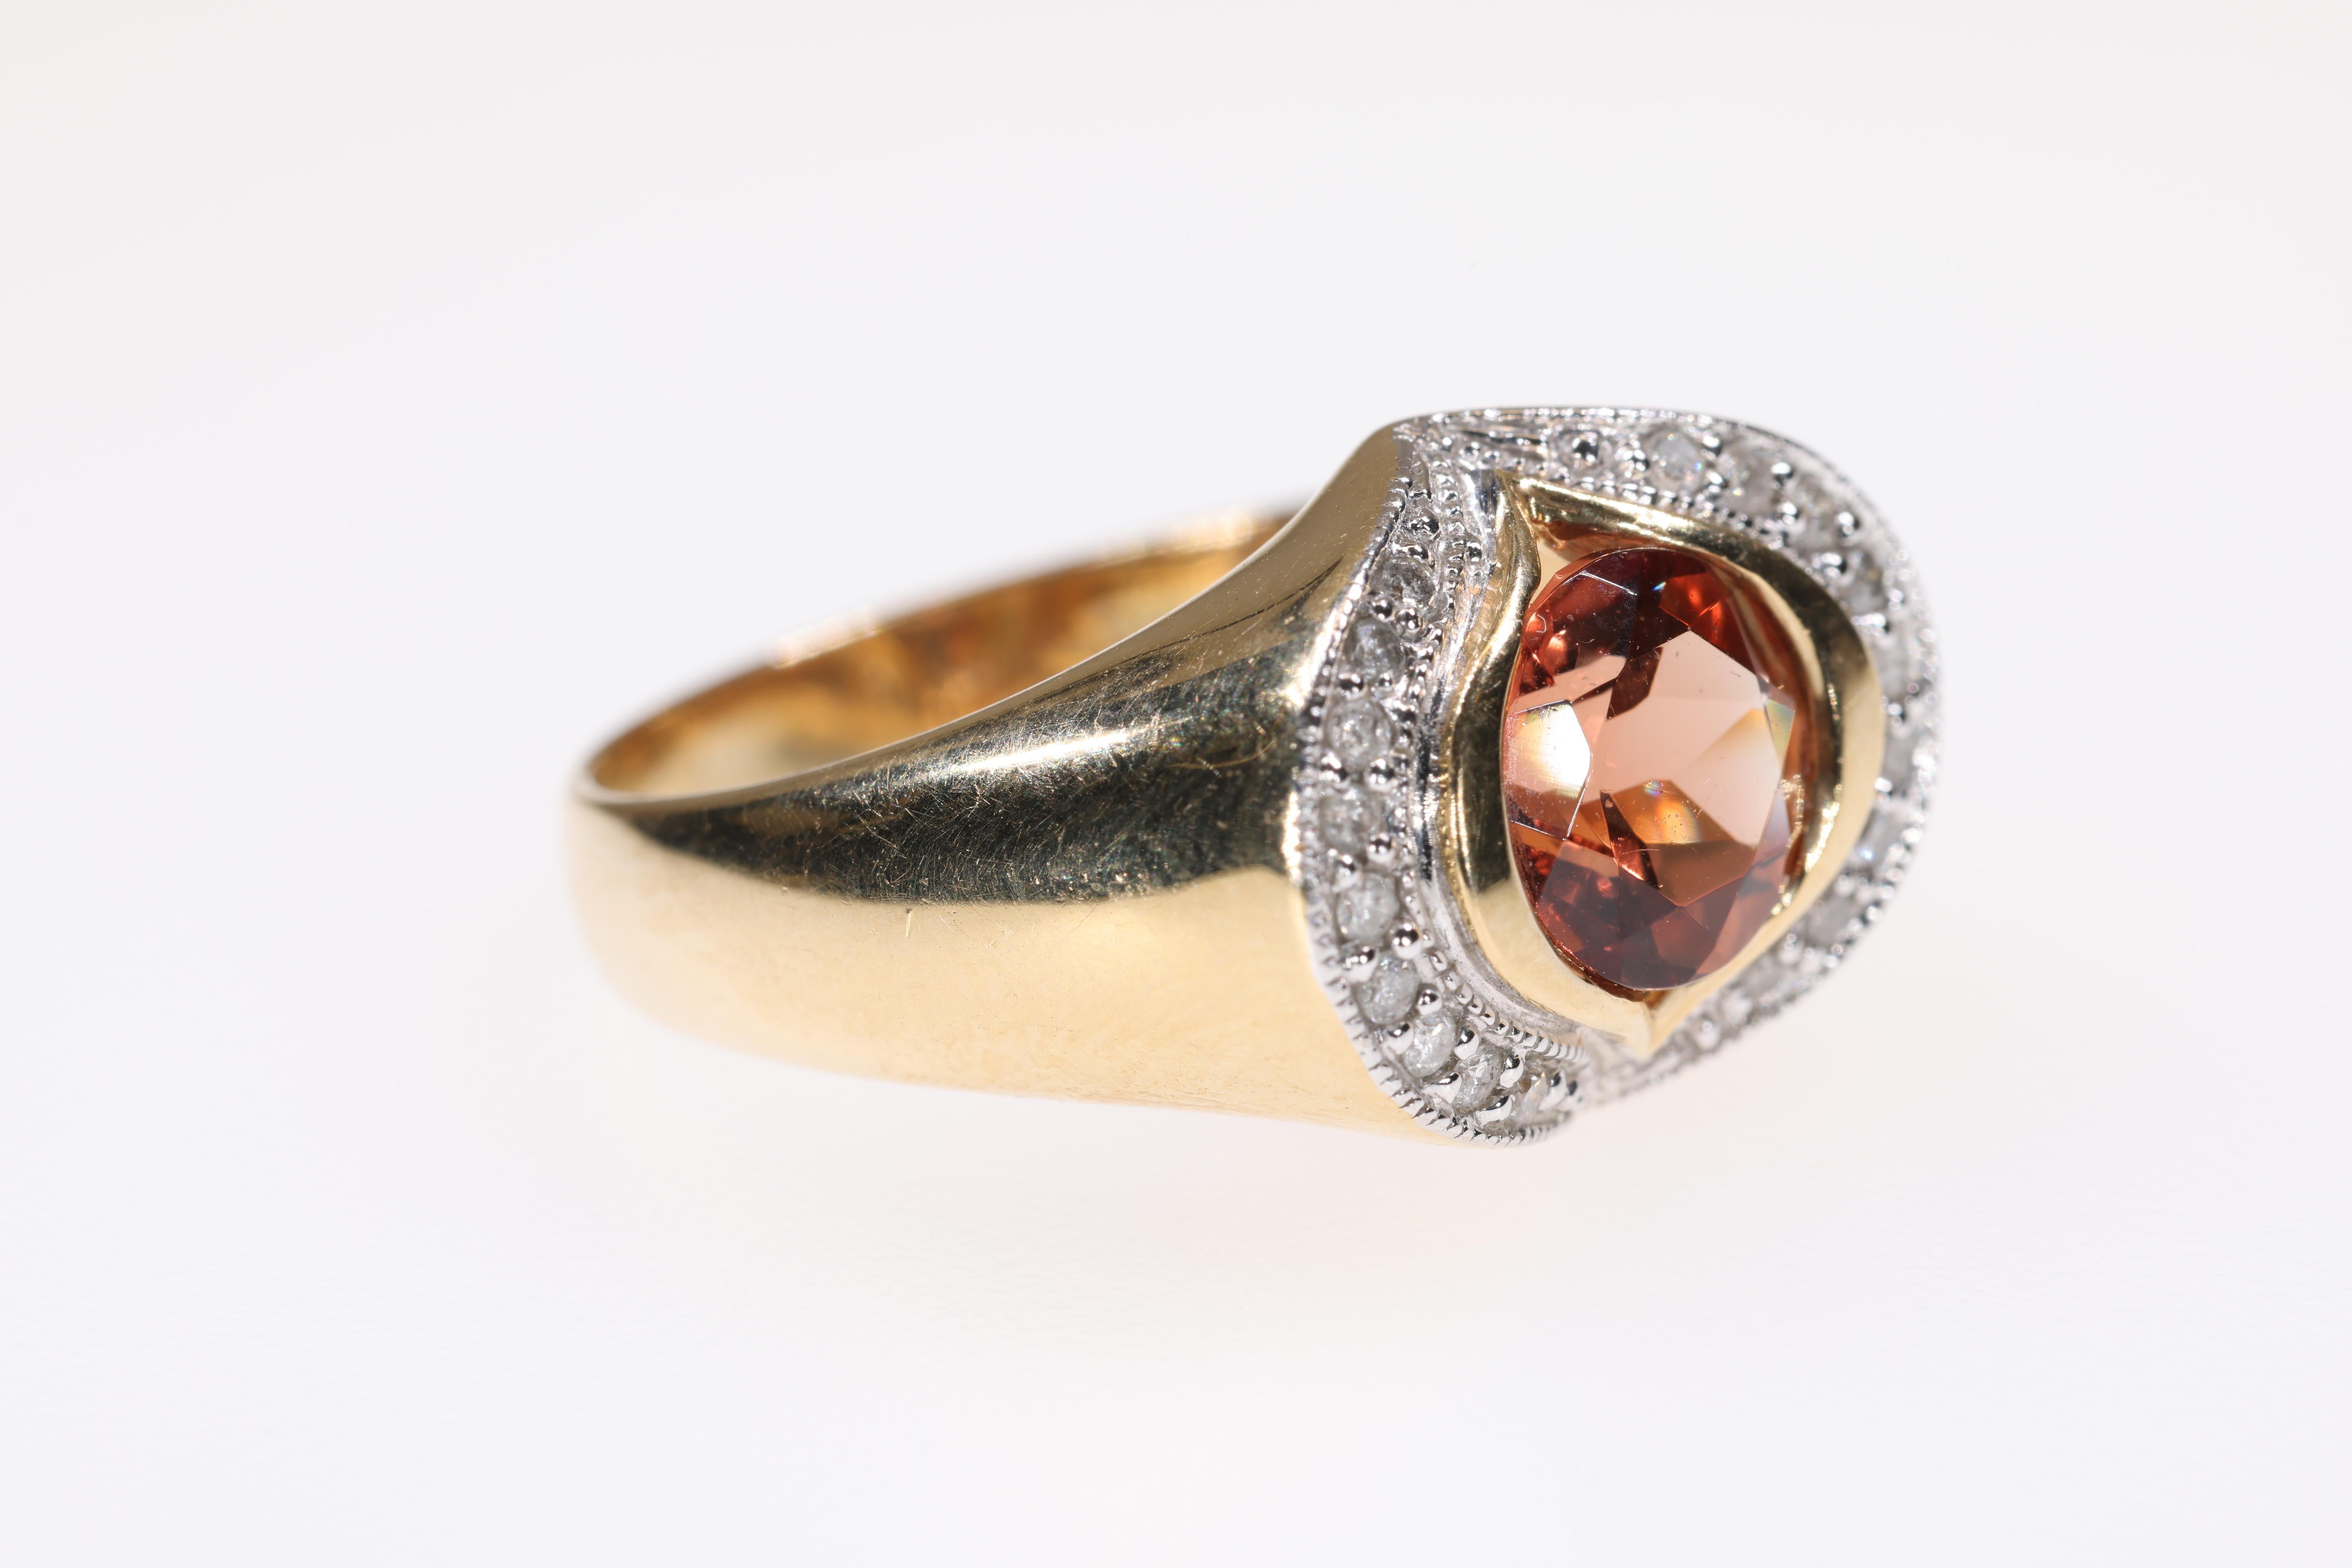 Dies ist eine schöne Mode Ring, dass ein Andesine Feldspat Mittelstein von tiefen reichen Farbe hat. Der Ring ist aus 14 Karat Gelb- und Weißgold gefertigt und mit 20 Diamanten besetzt.